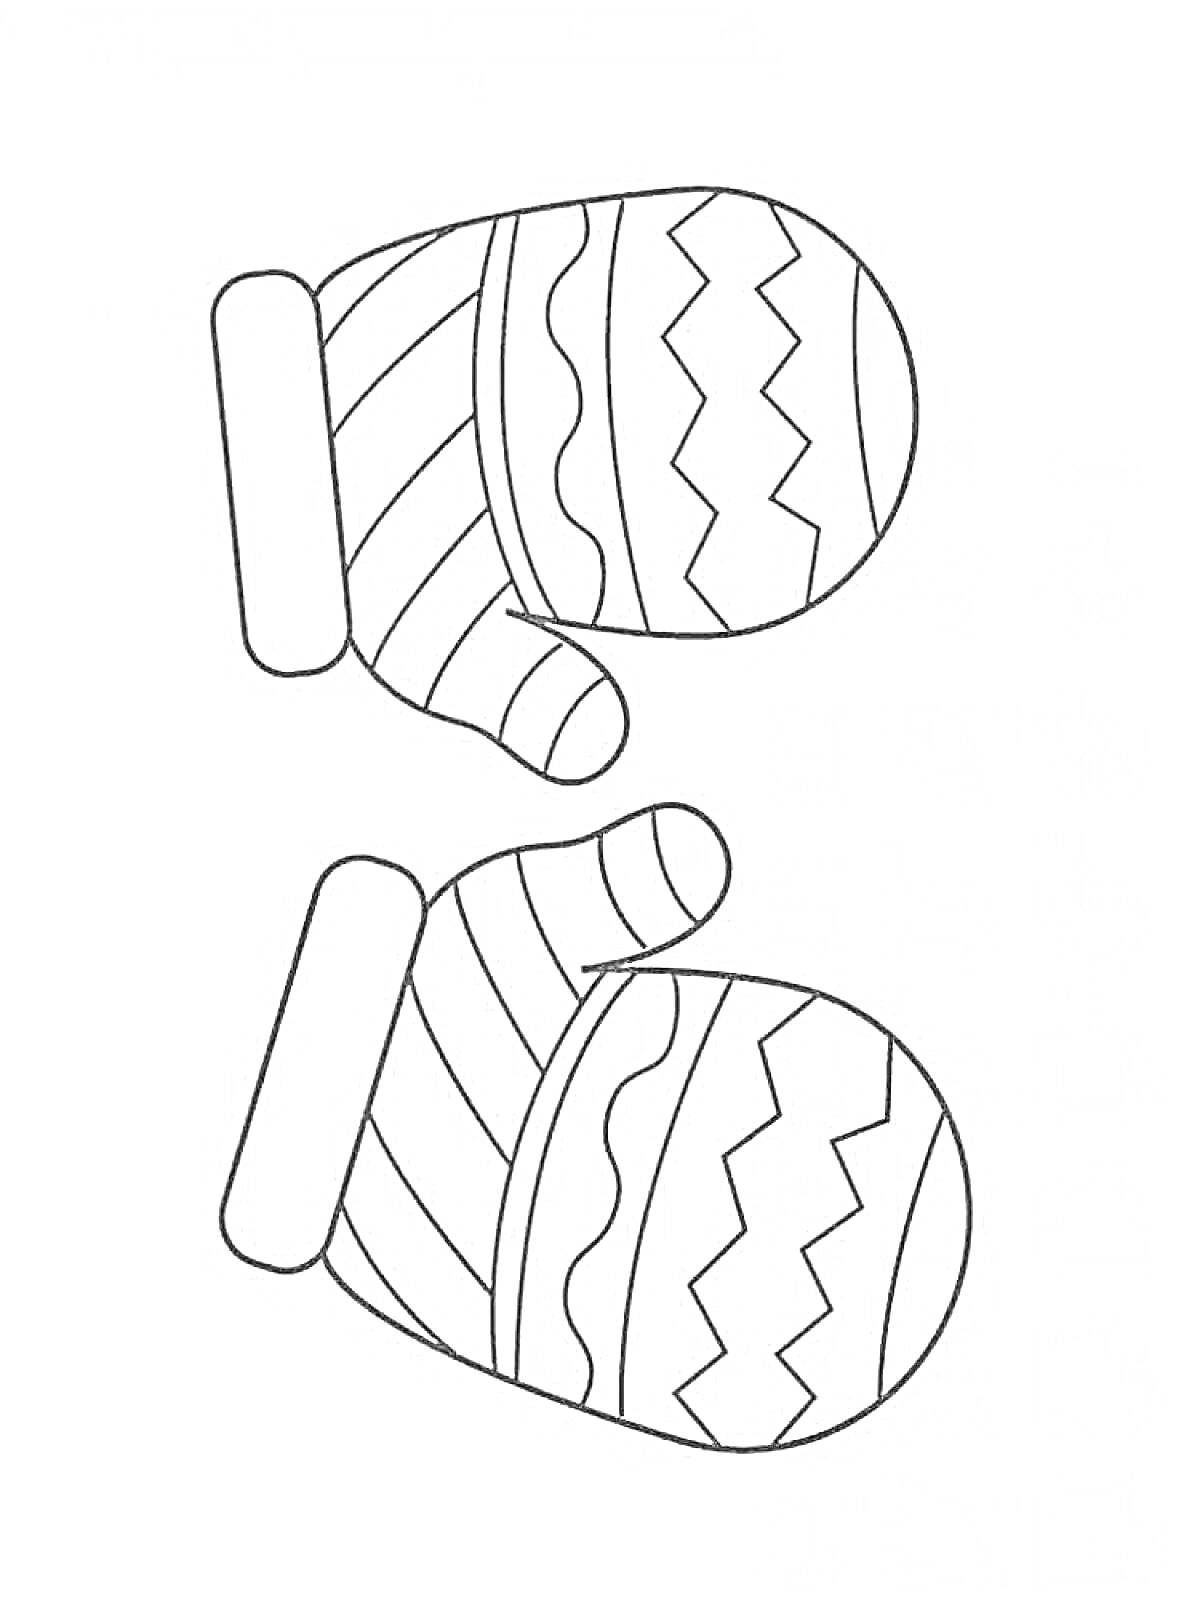 Раскраска Рукавицы с узорами: зигзаги и полосы